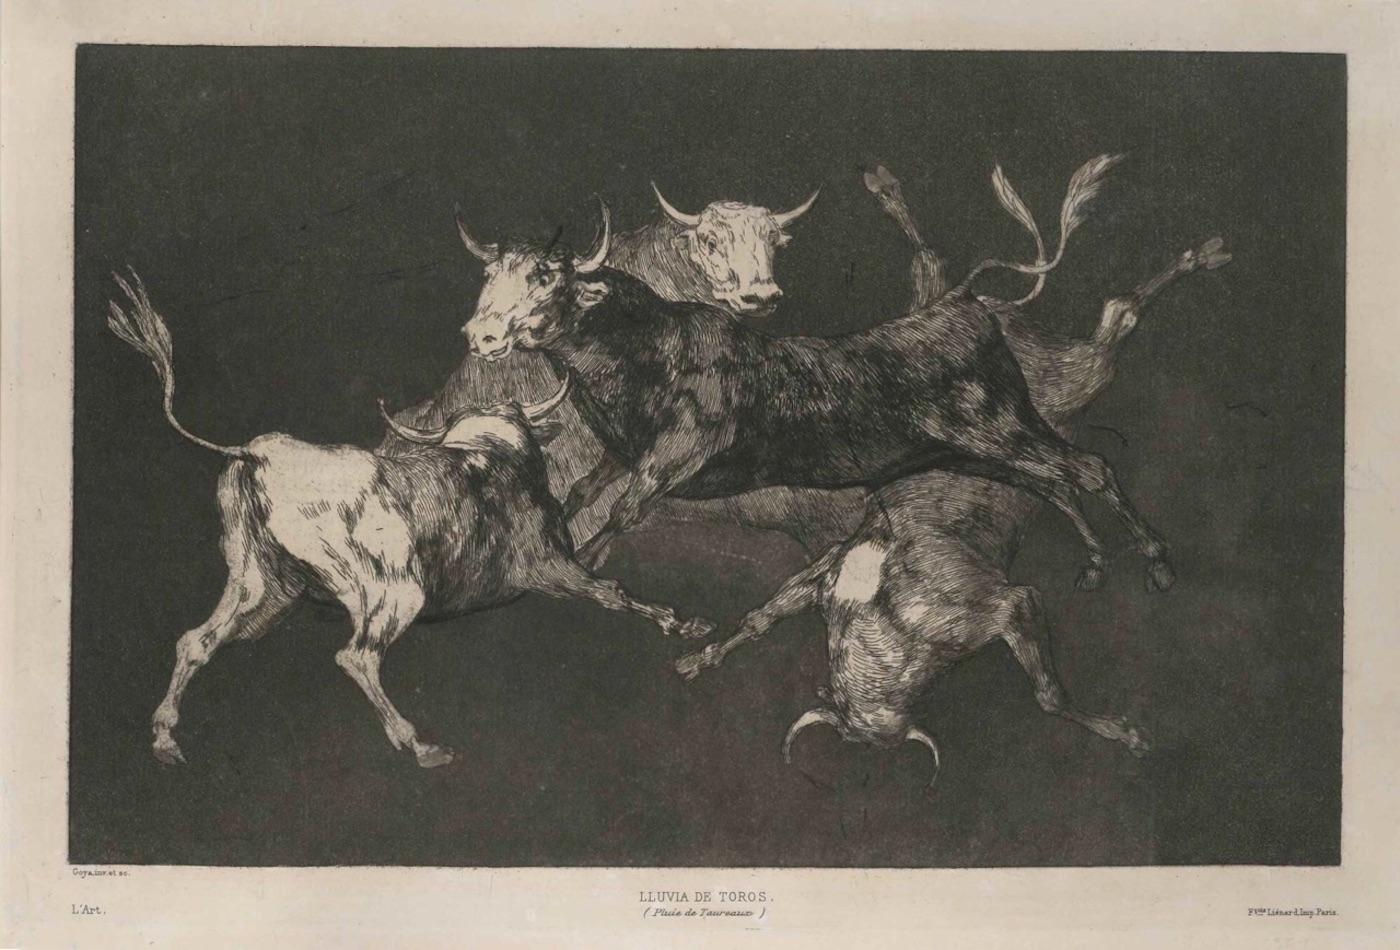 Francisco Goya Animal Print - Lluvia De Toros - Original Etching by F. Goya - 1815/19